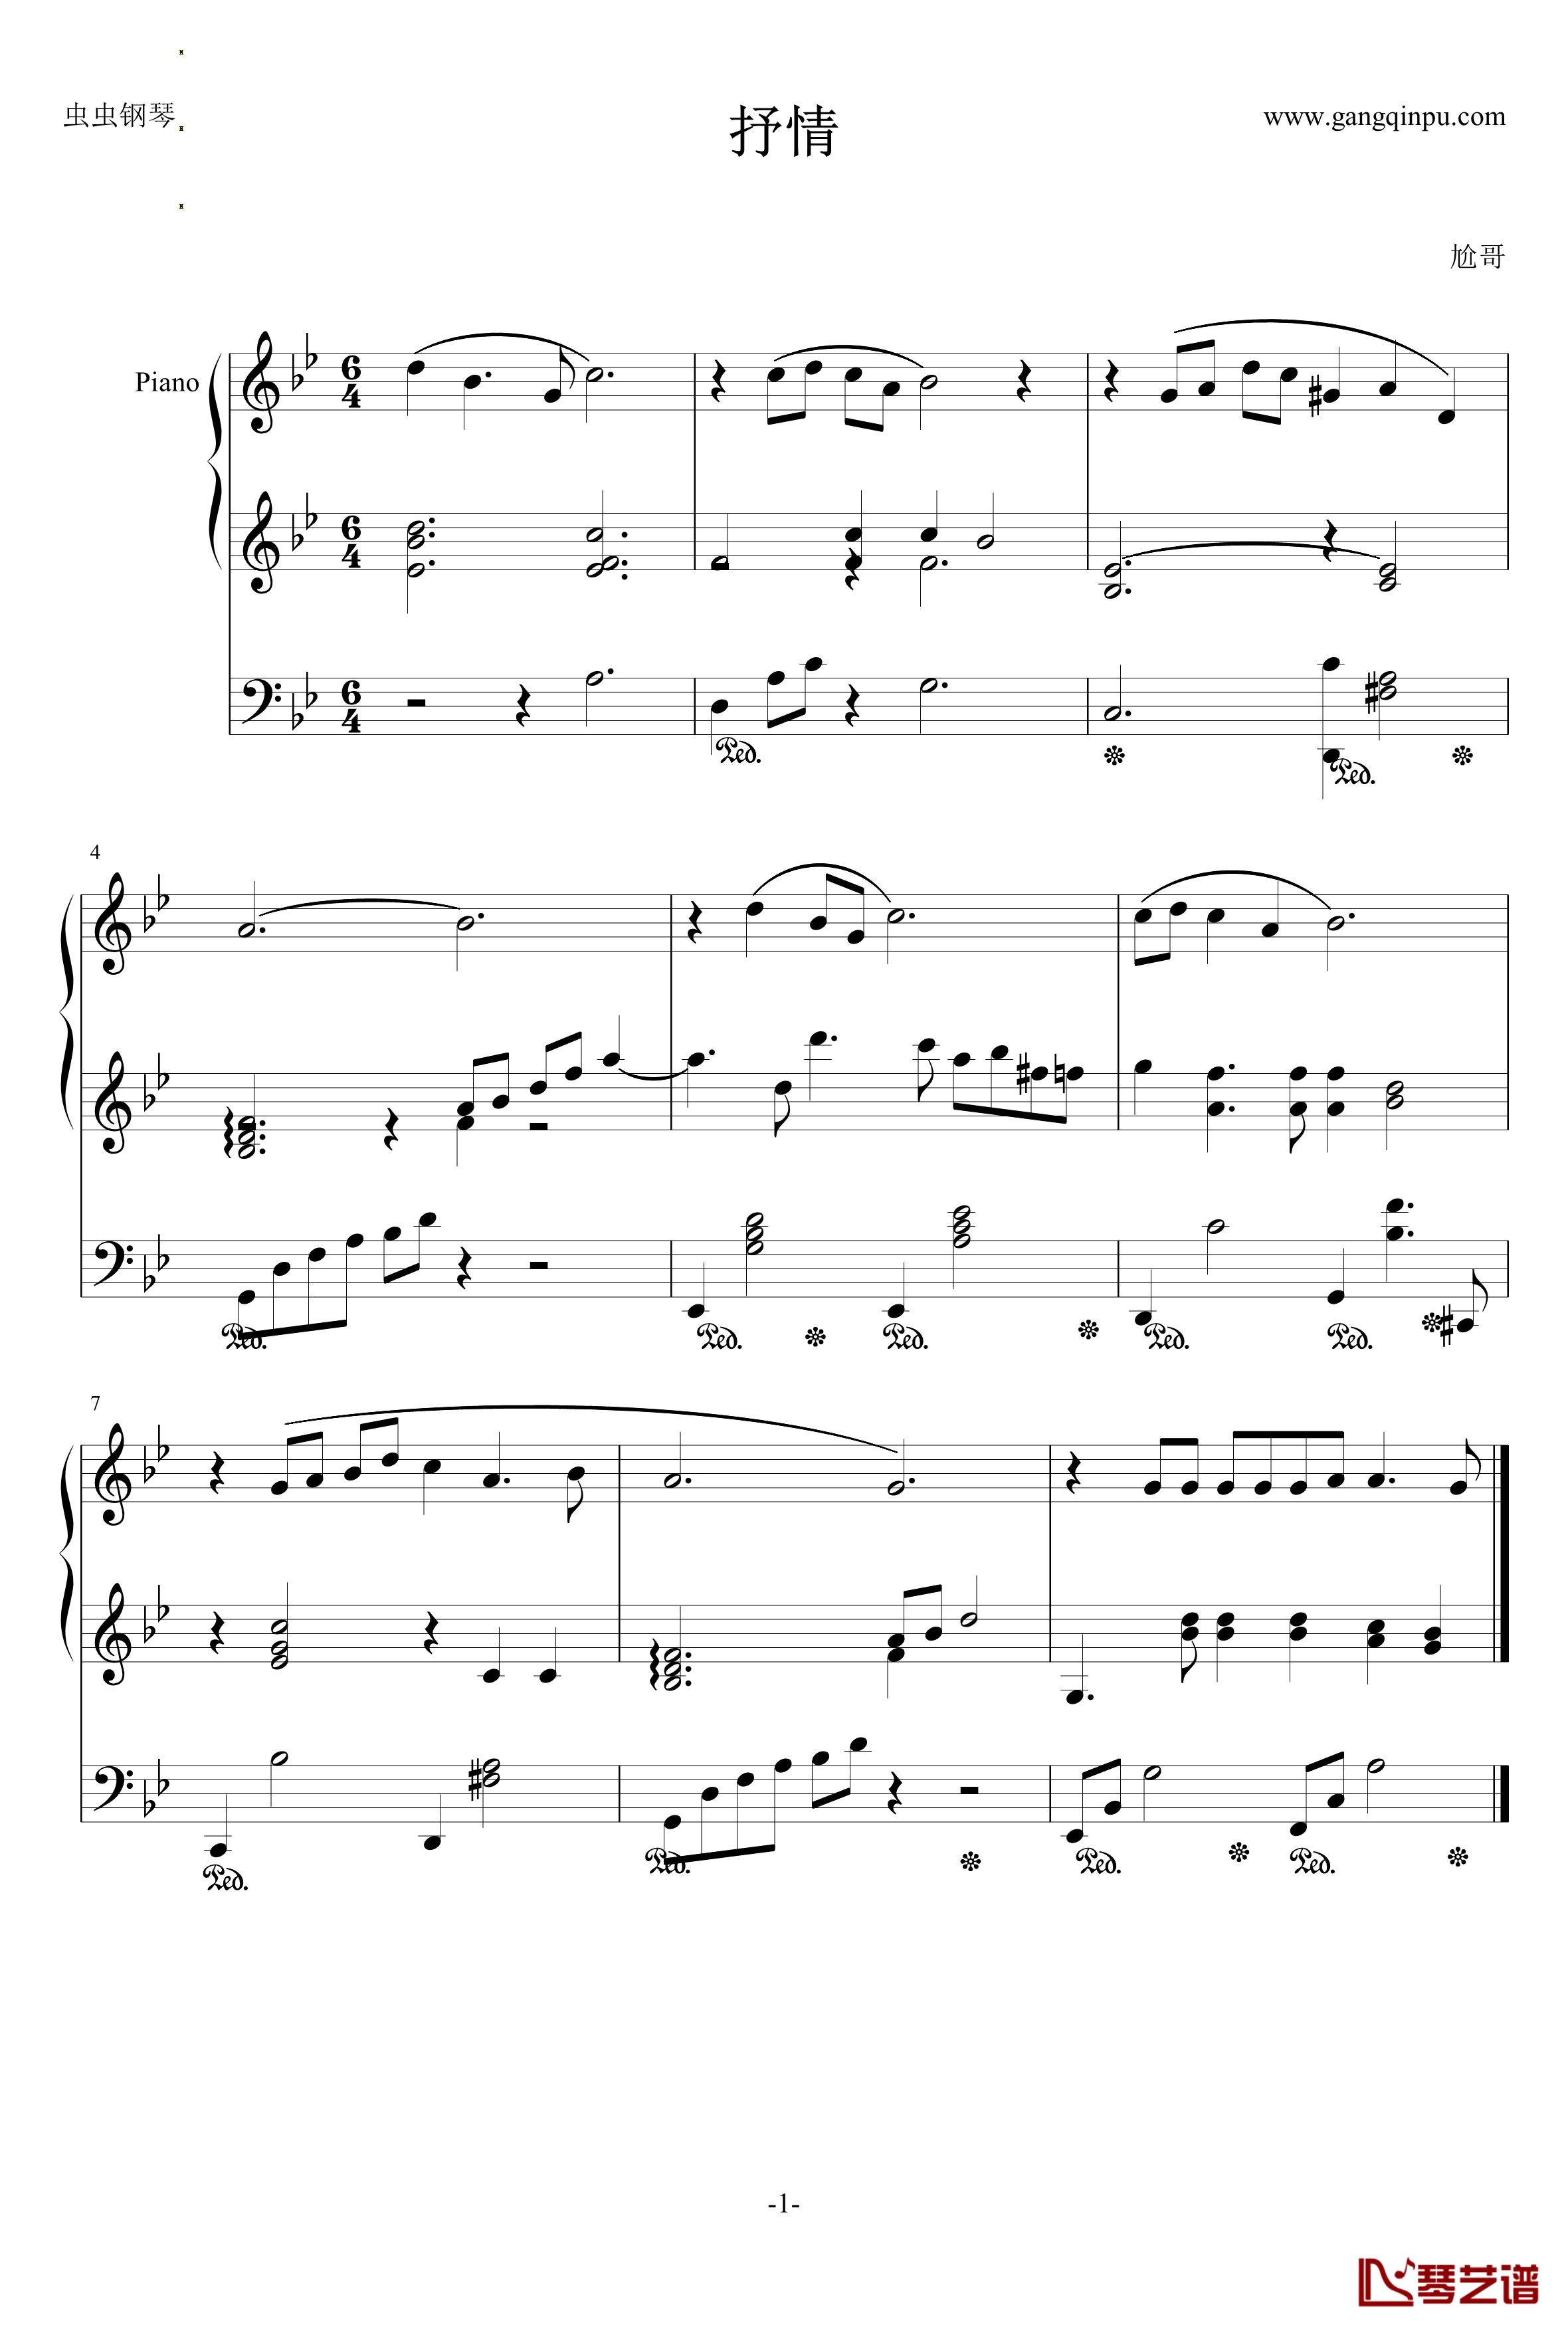 抒情钢琴谱-尬哥1